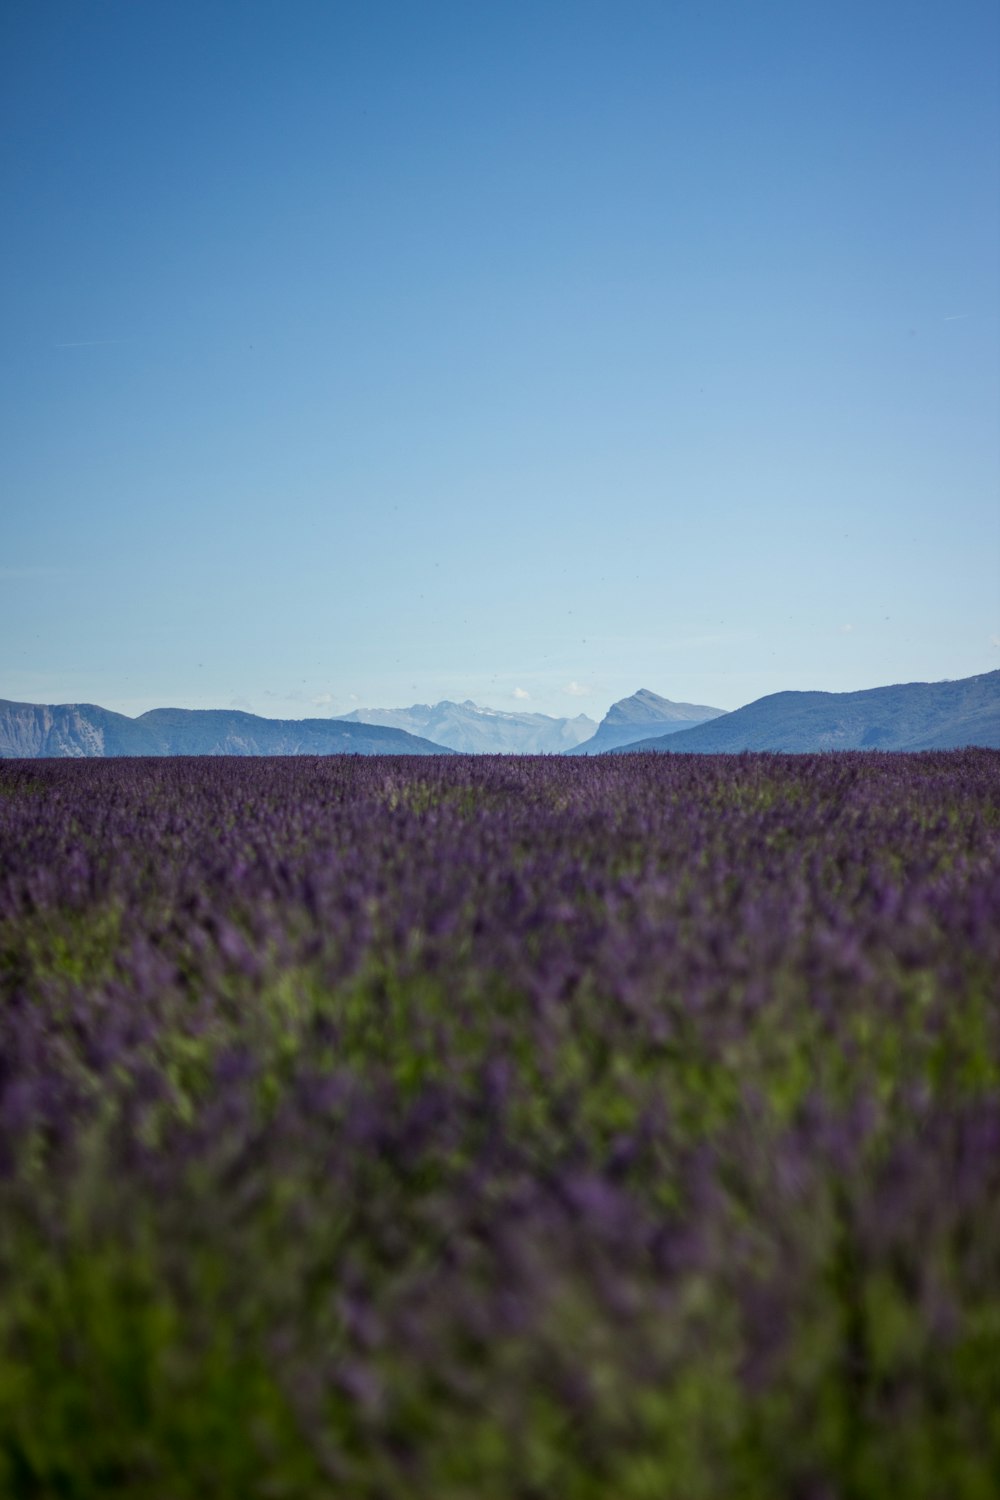 Campo de lavanda púrpura con vistas a las montañas durante el día